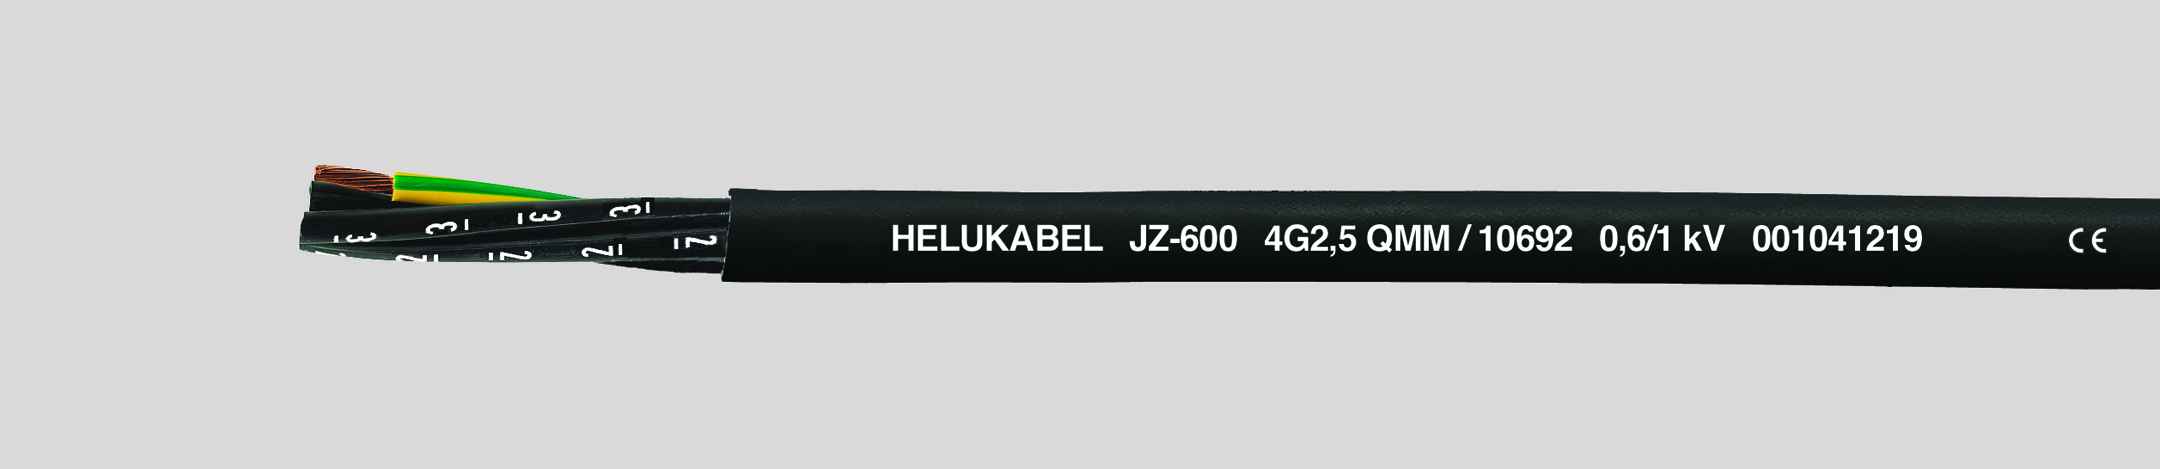 HELUKABEL ITALIA SRL - HLK10725 JZ-600 4G16 QMM BLACK